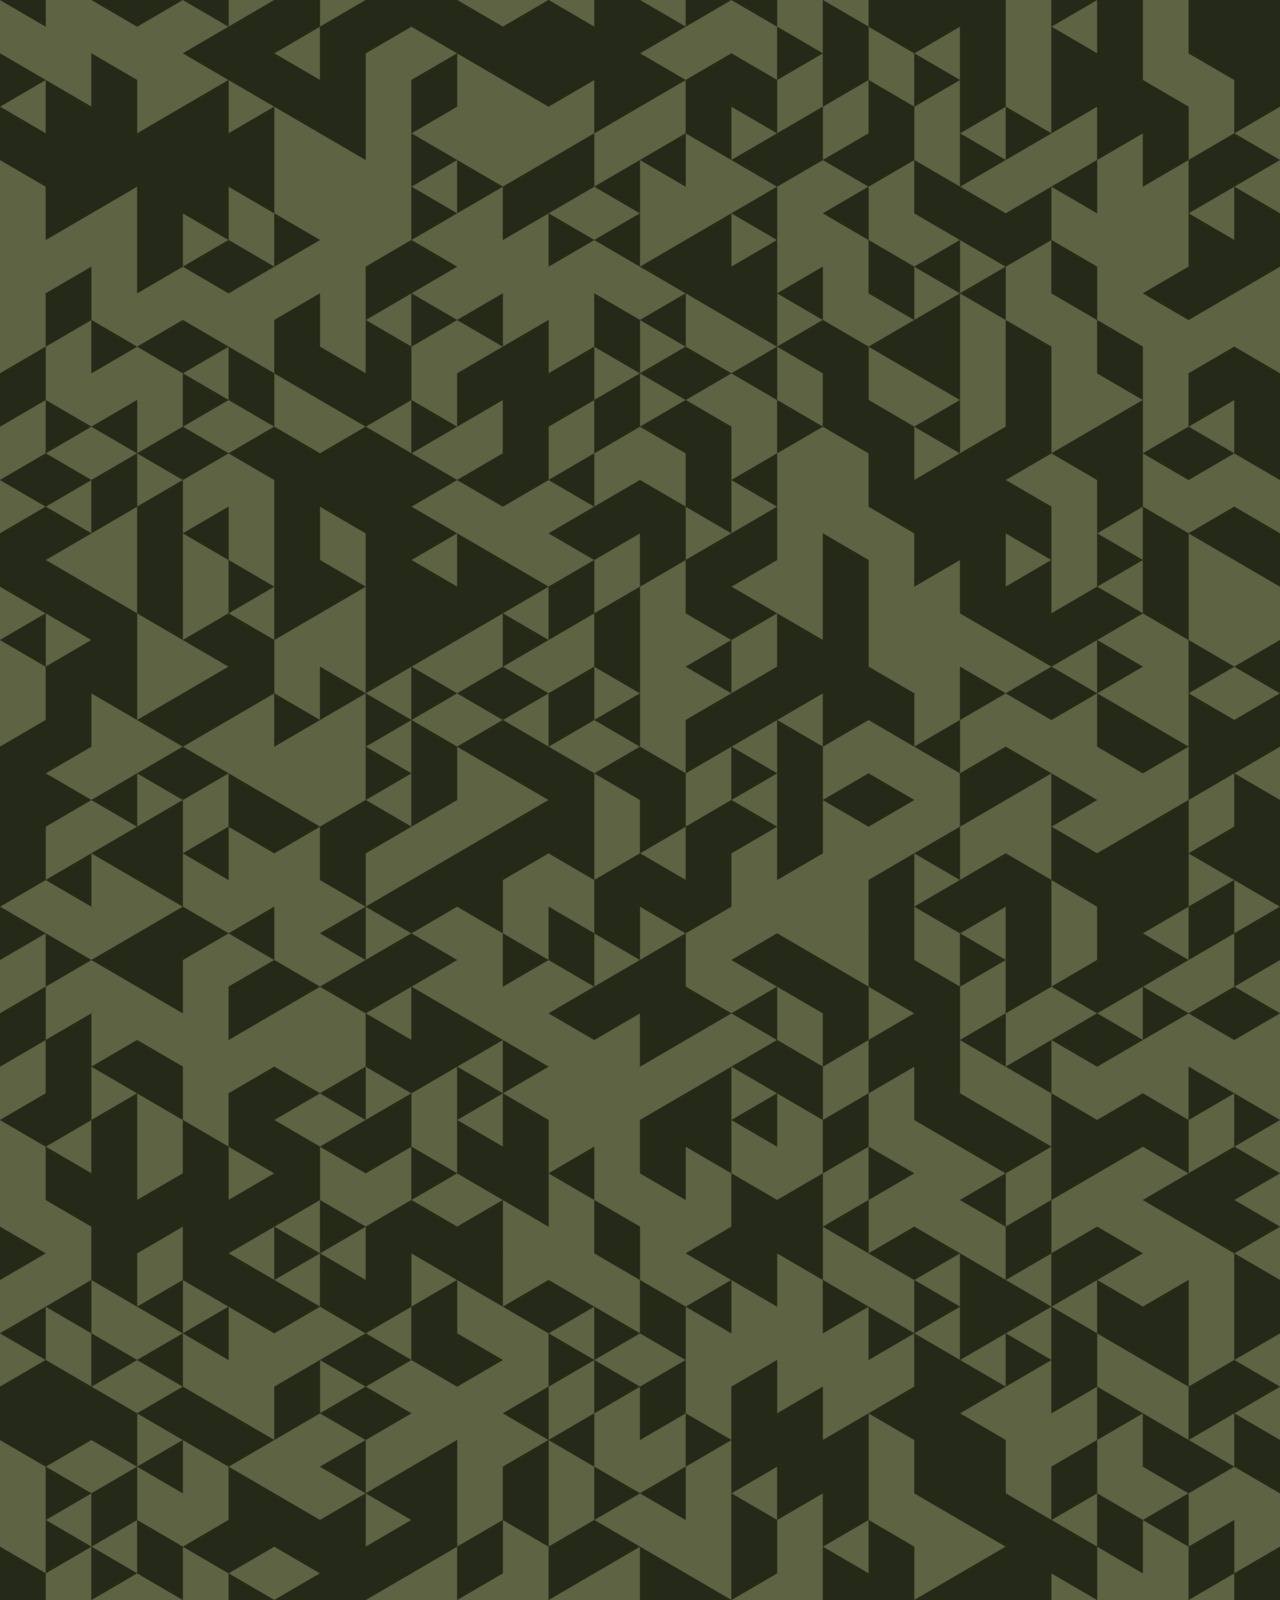 Camouflage pattern background seamless by ratkomat